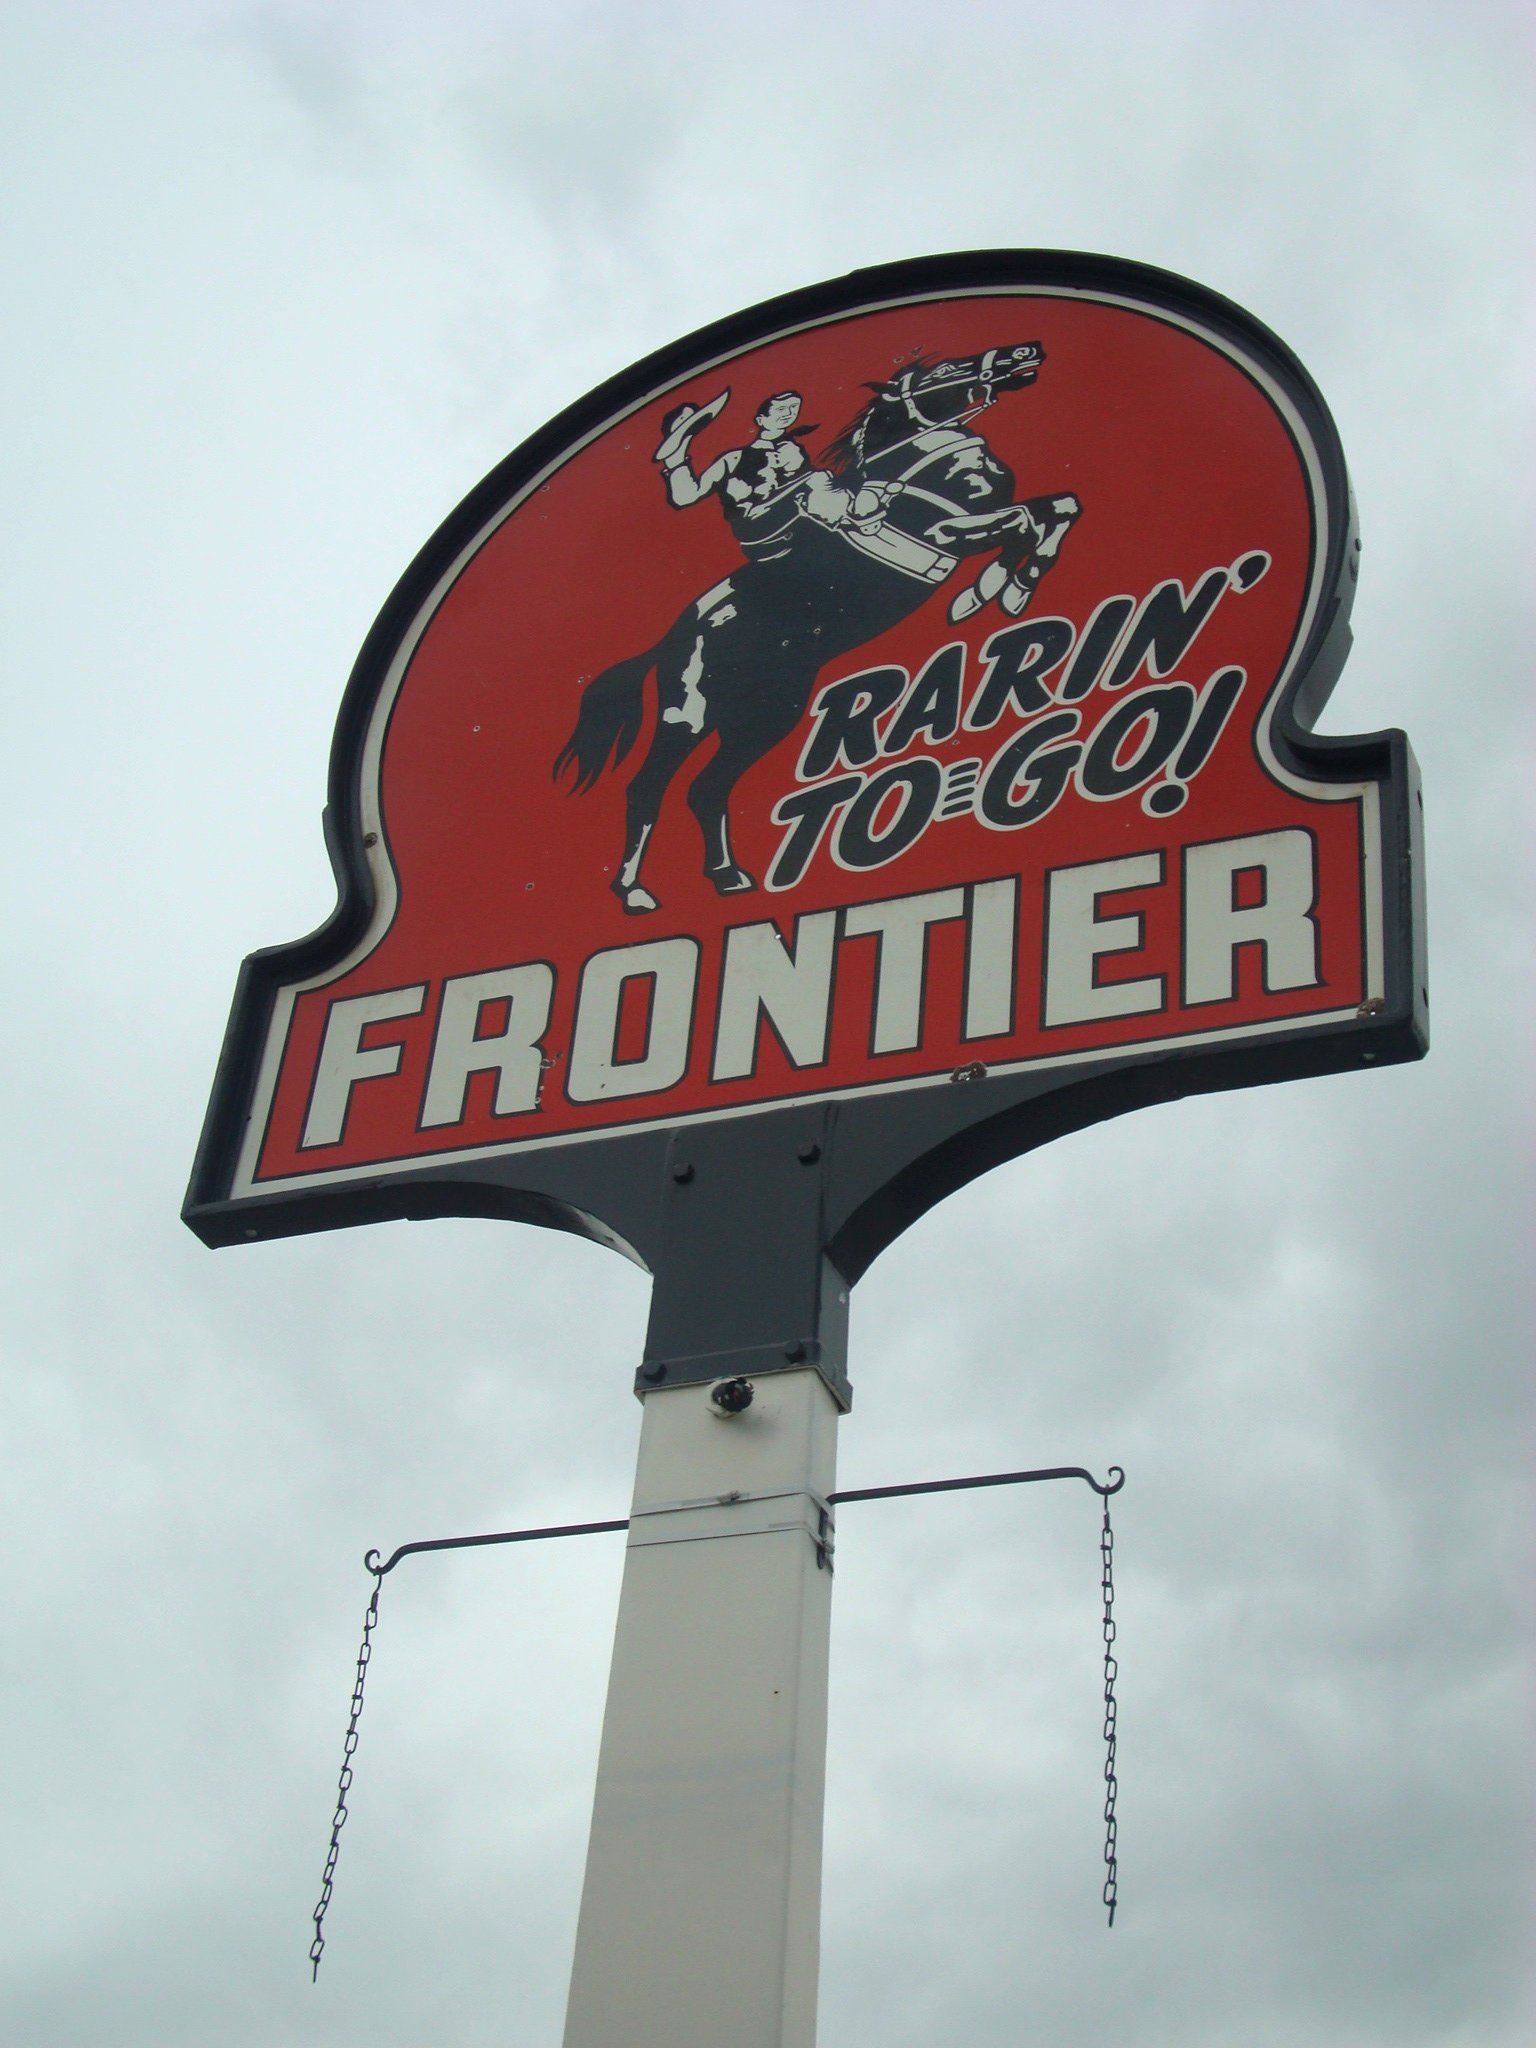 Frontier Gas sign - Craig, Colorado U.S.A. - May 21, 2009